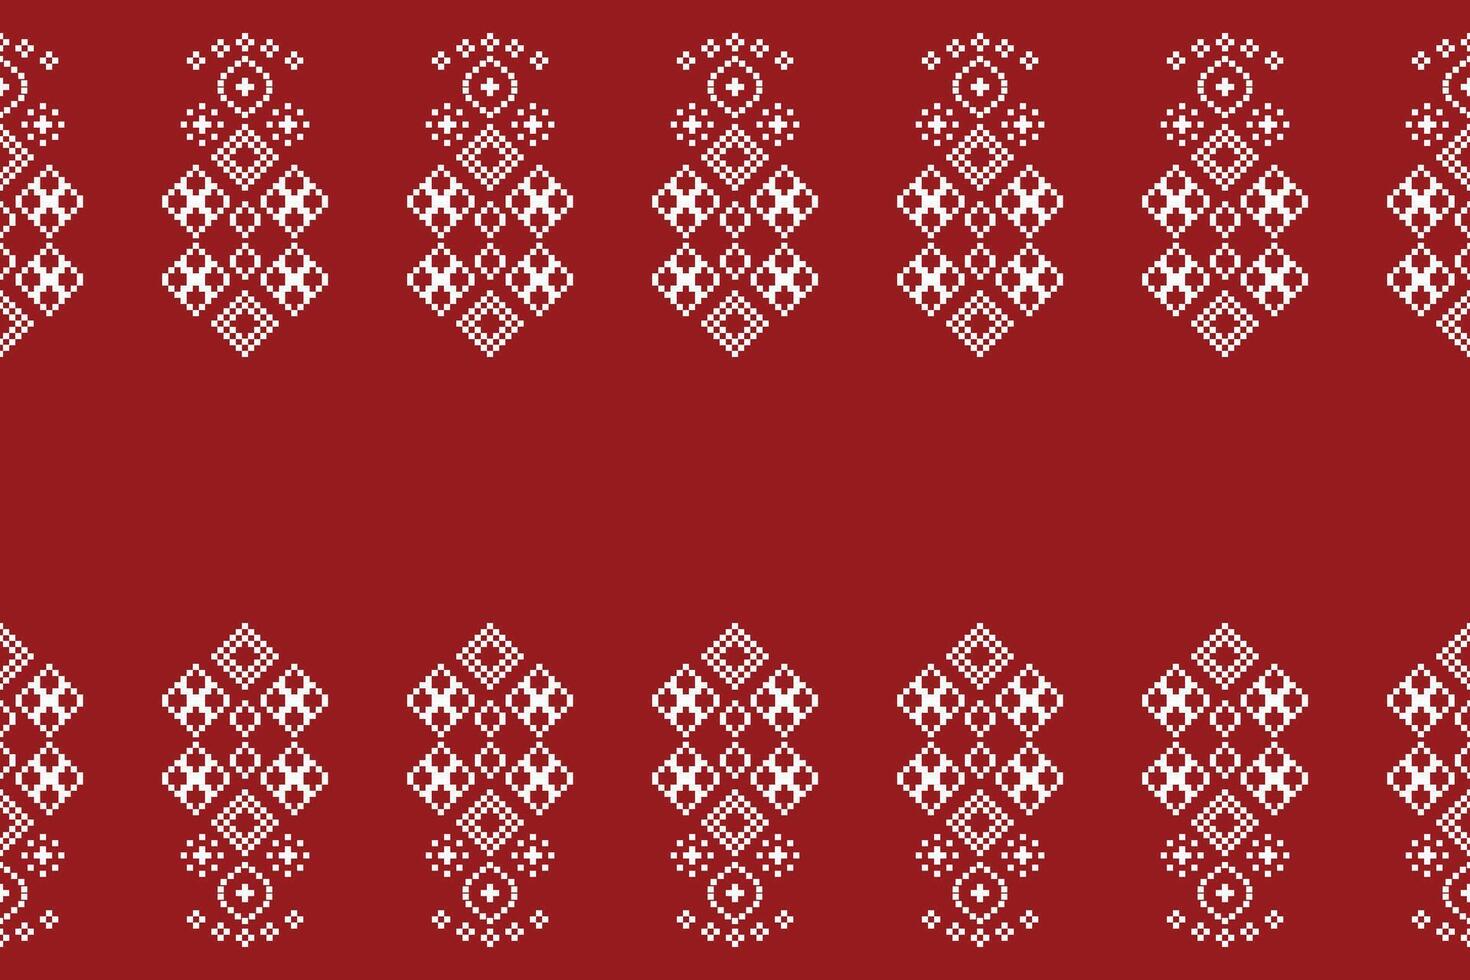 traditionell ethnisch Motive Ikat geometrisch Stoff Muster Kreuz Stich.ikat Stickerei ethnisch orientalisch Pixel rot Hintergrund. abstrakt, vektor, illustration. Textur, Weihnachten, Dekoration, Tapete. vektor